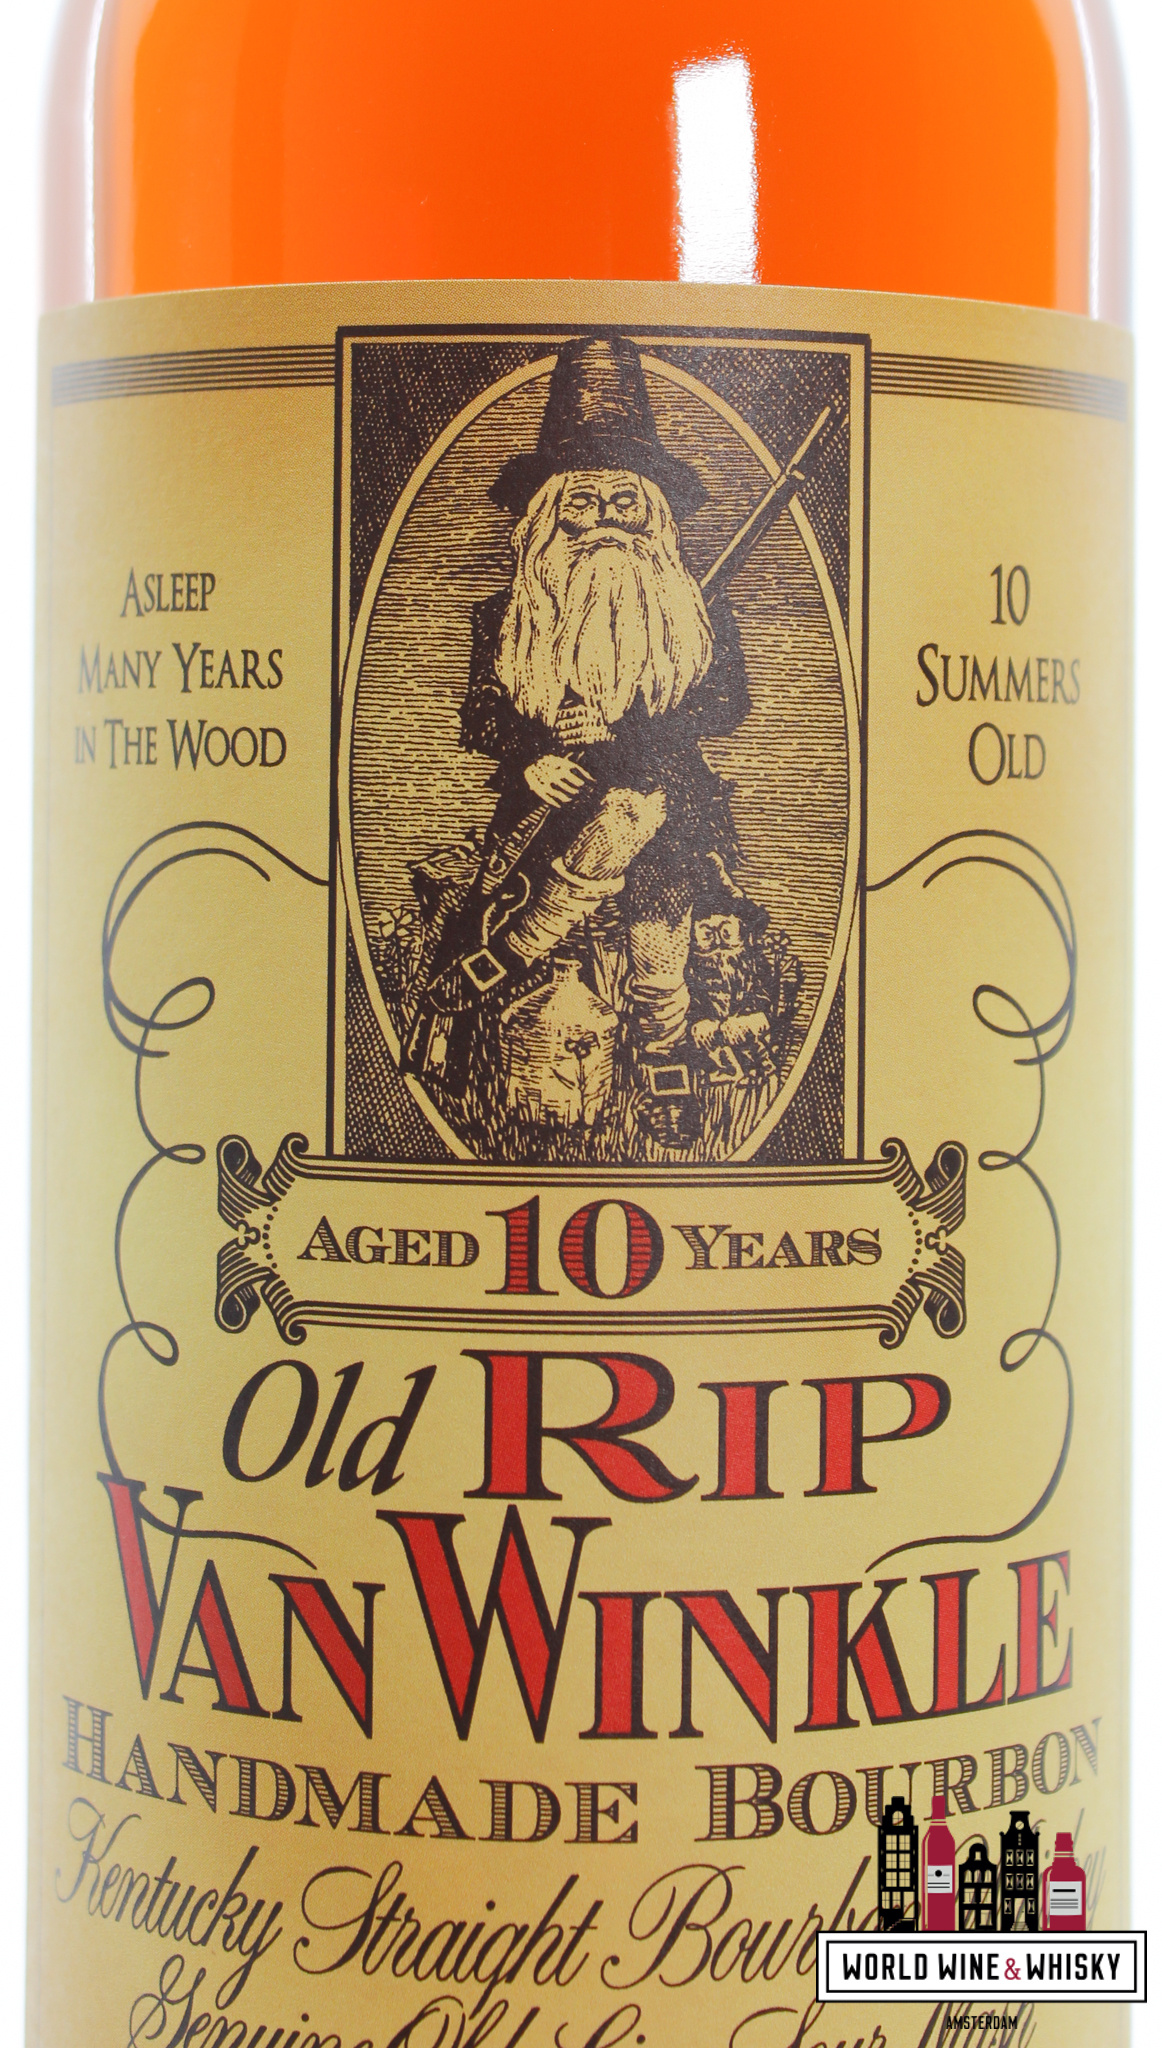 Old Rip Van Winkle Old Rip van Winkle 10 Years Old - Handmade Bourbon 107 Proof 53.5%